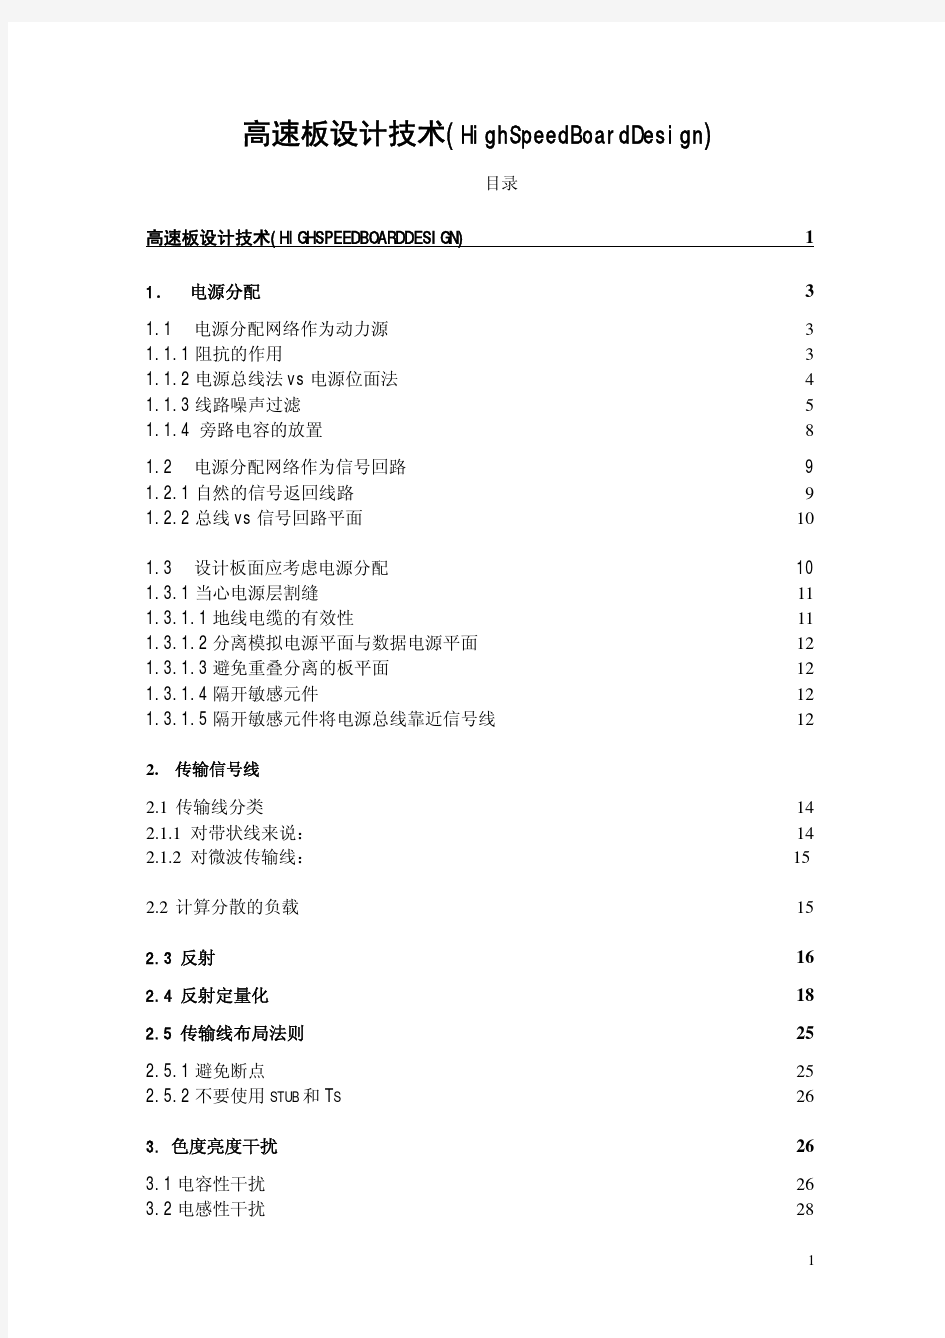 高速电路板设计指南(中文版)